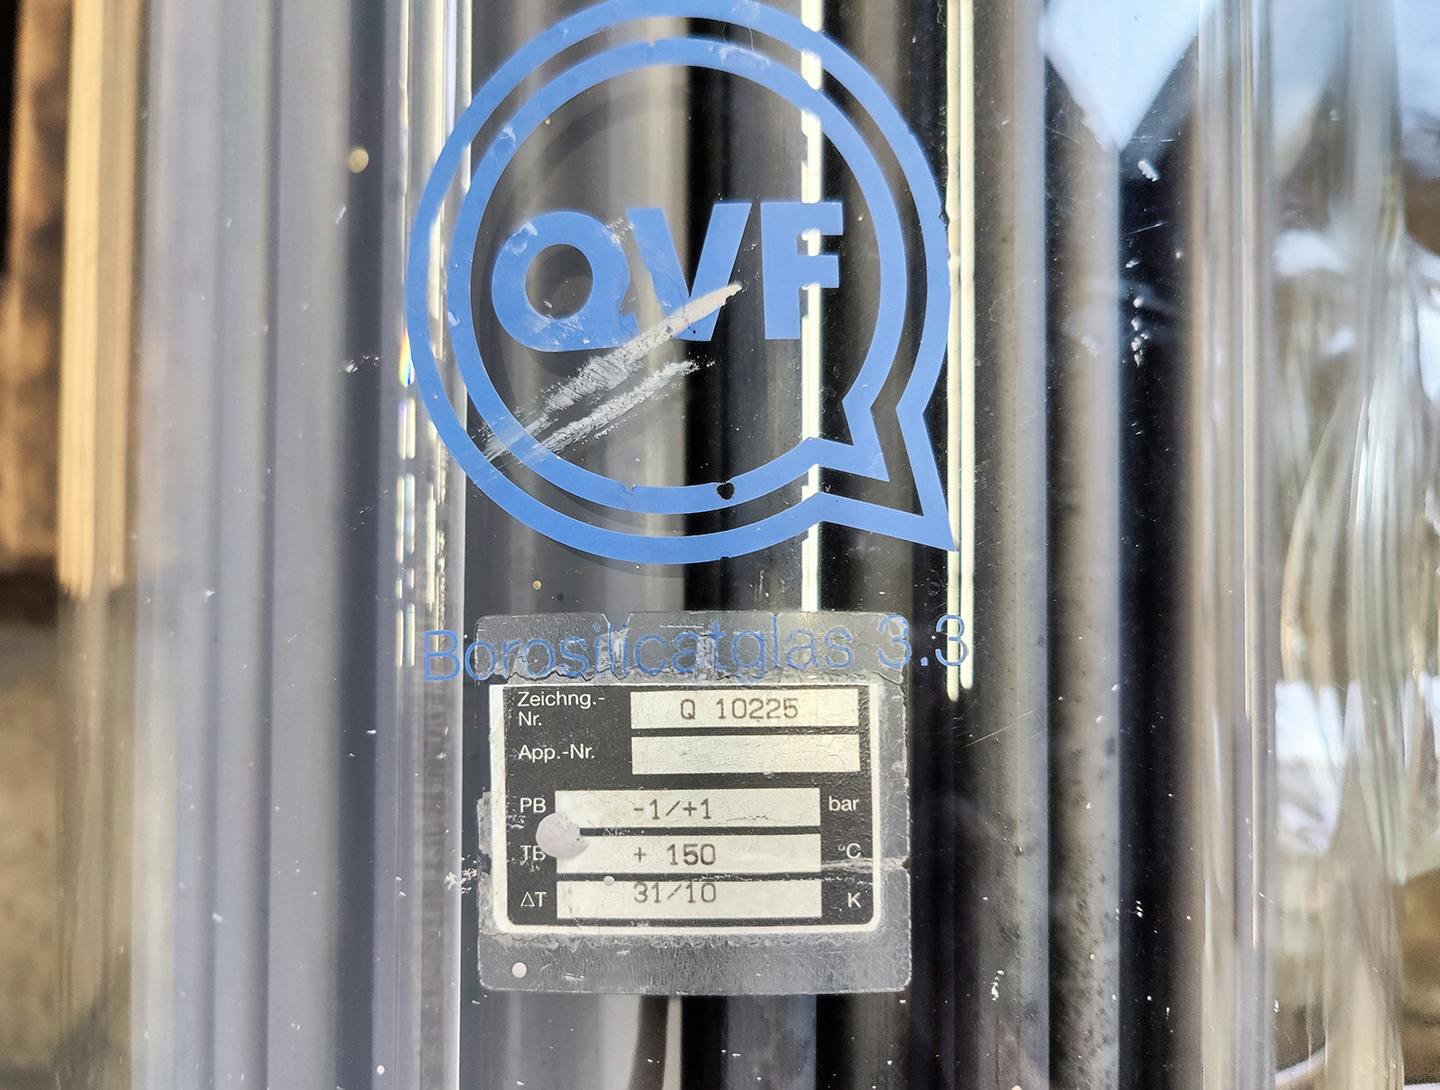 QVF Glasstechnik S-ROB71/300/SH/3SIC - 7,1 m² - Кожухотрубчатый теплообменник - image 8